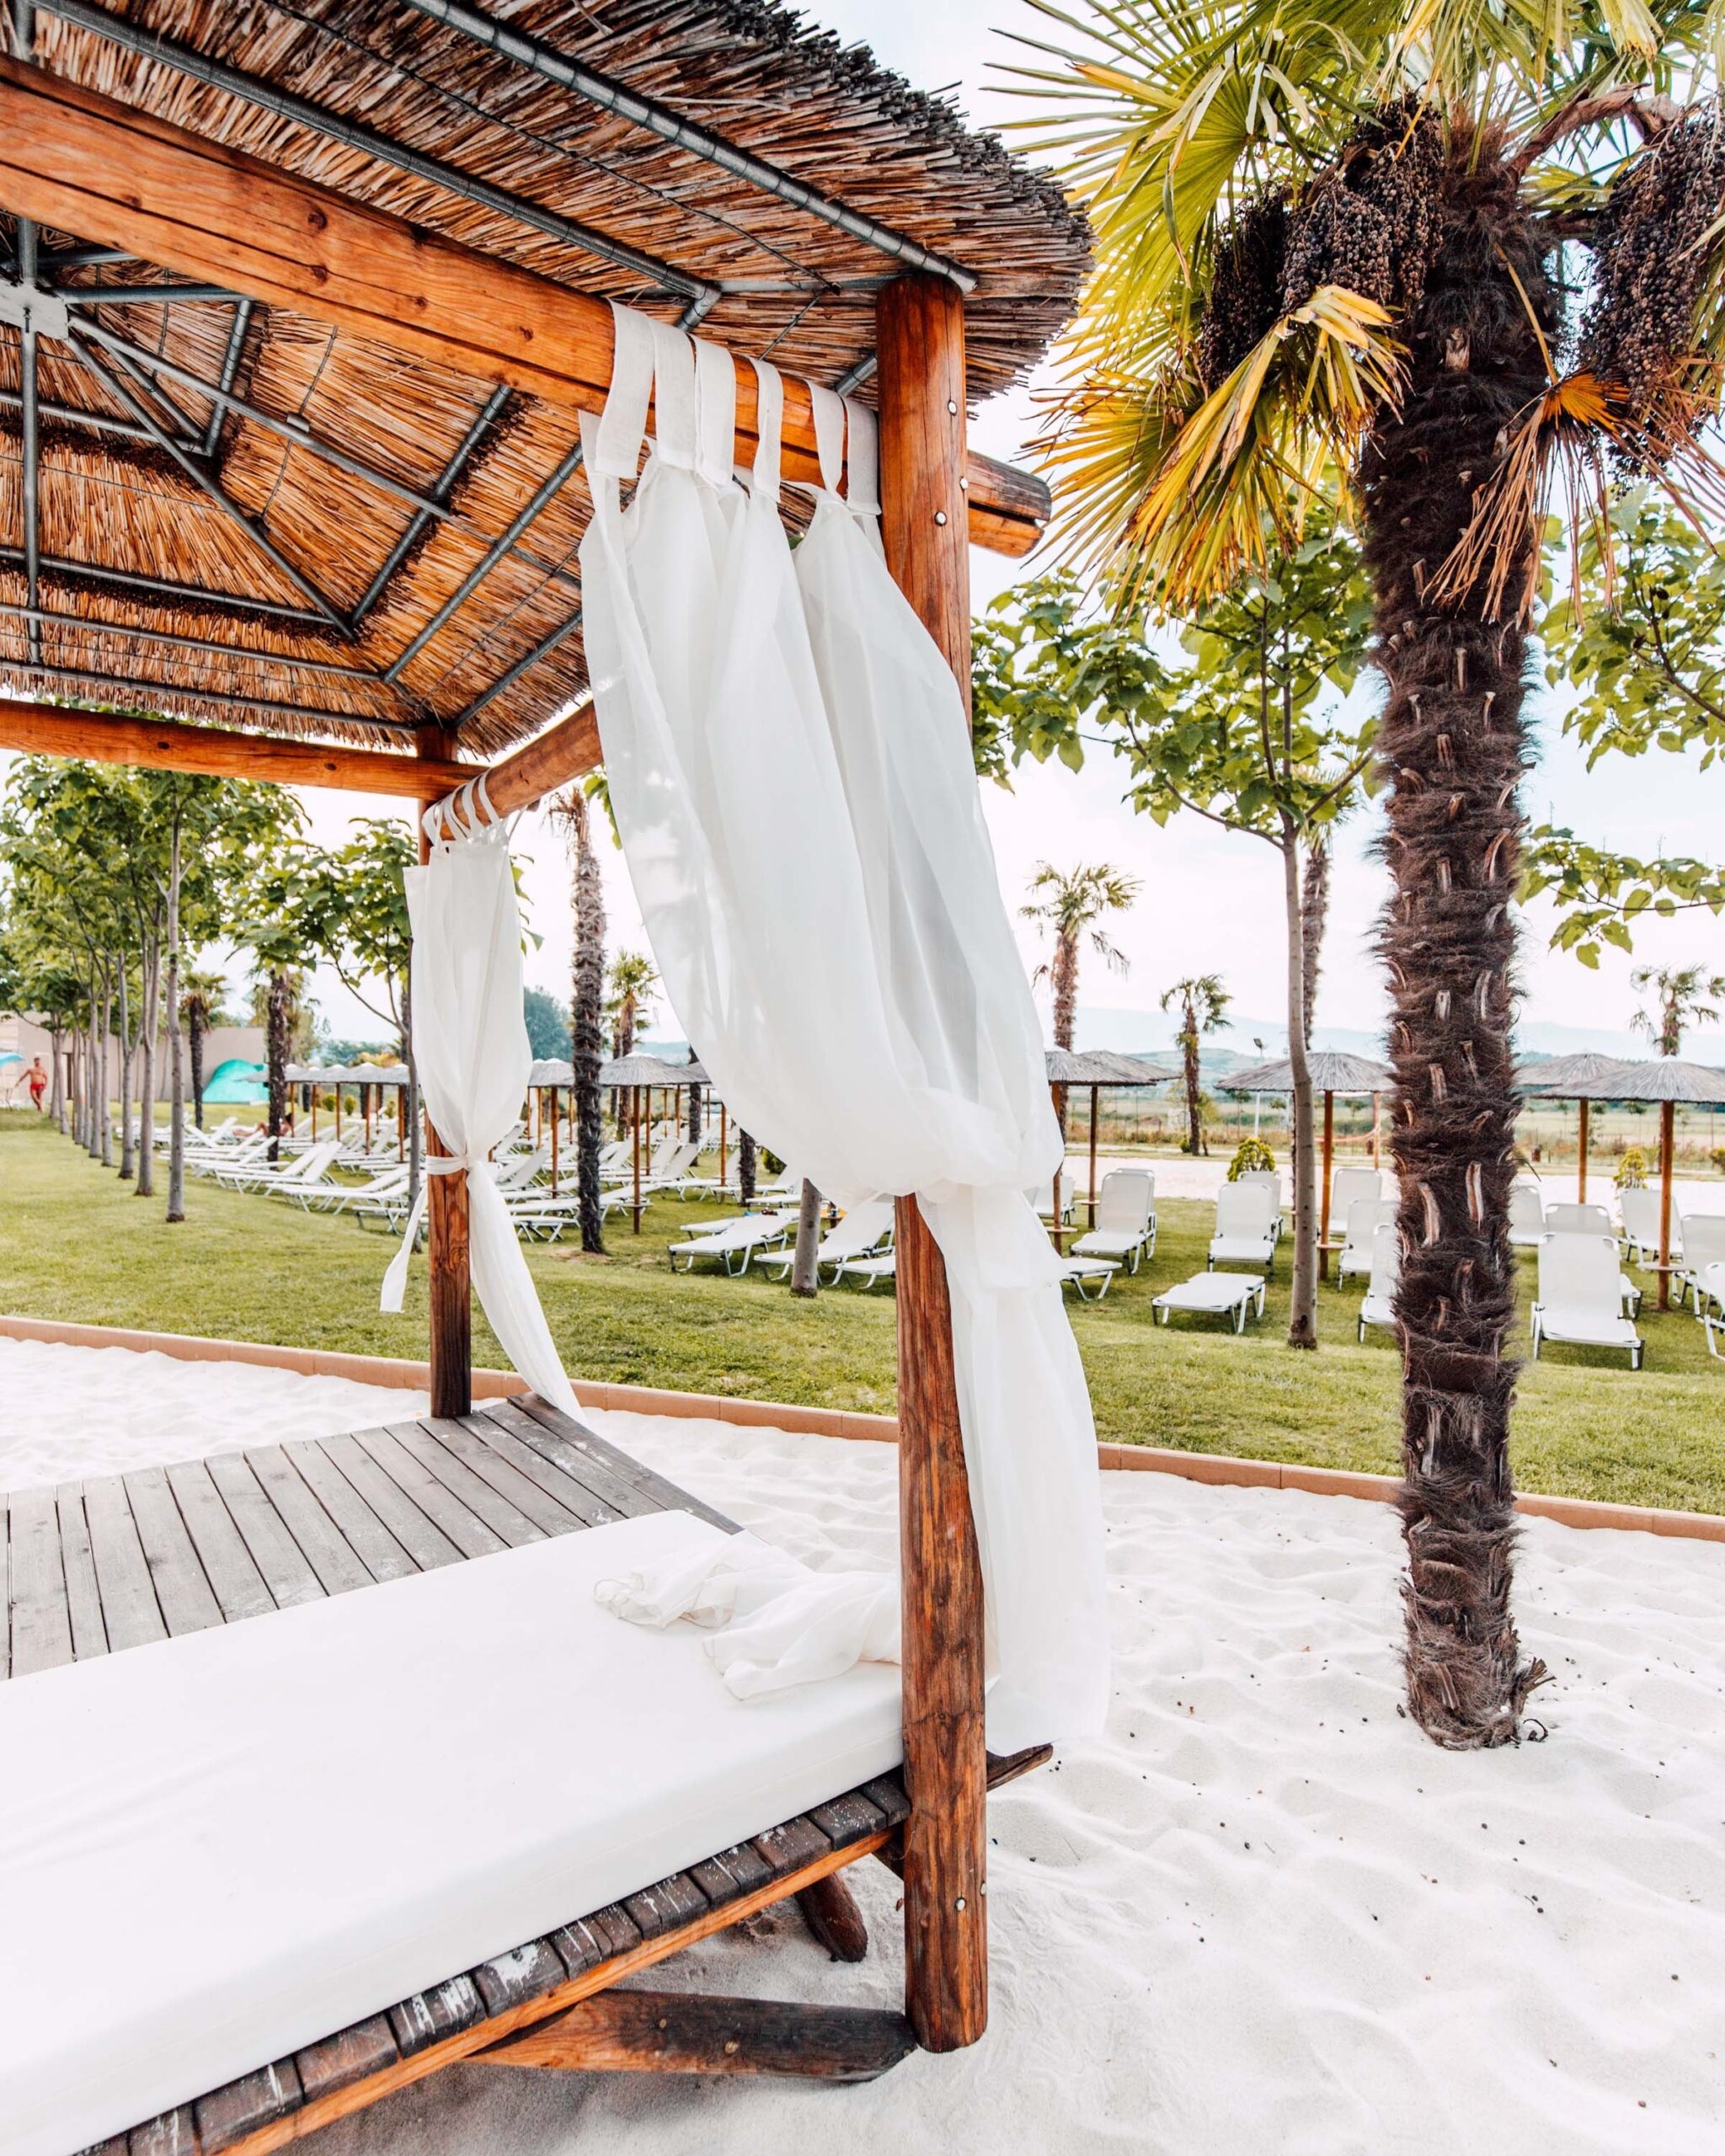 cabana bed at Caribbean resort